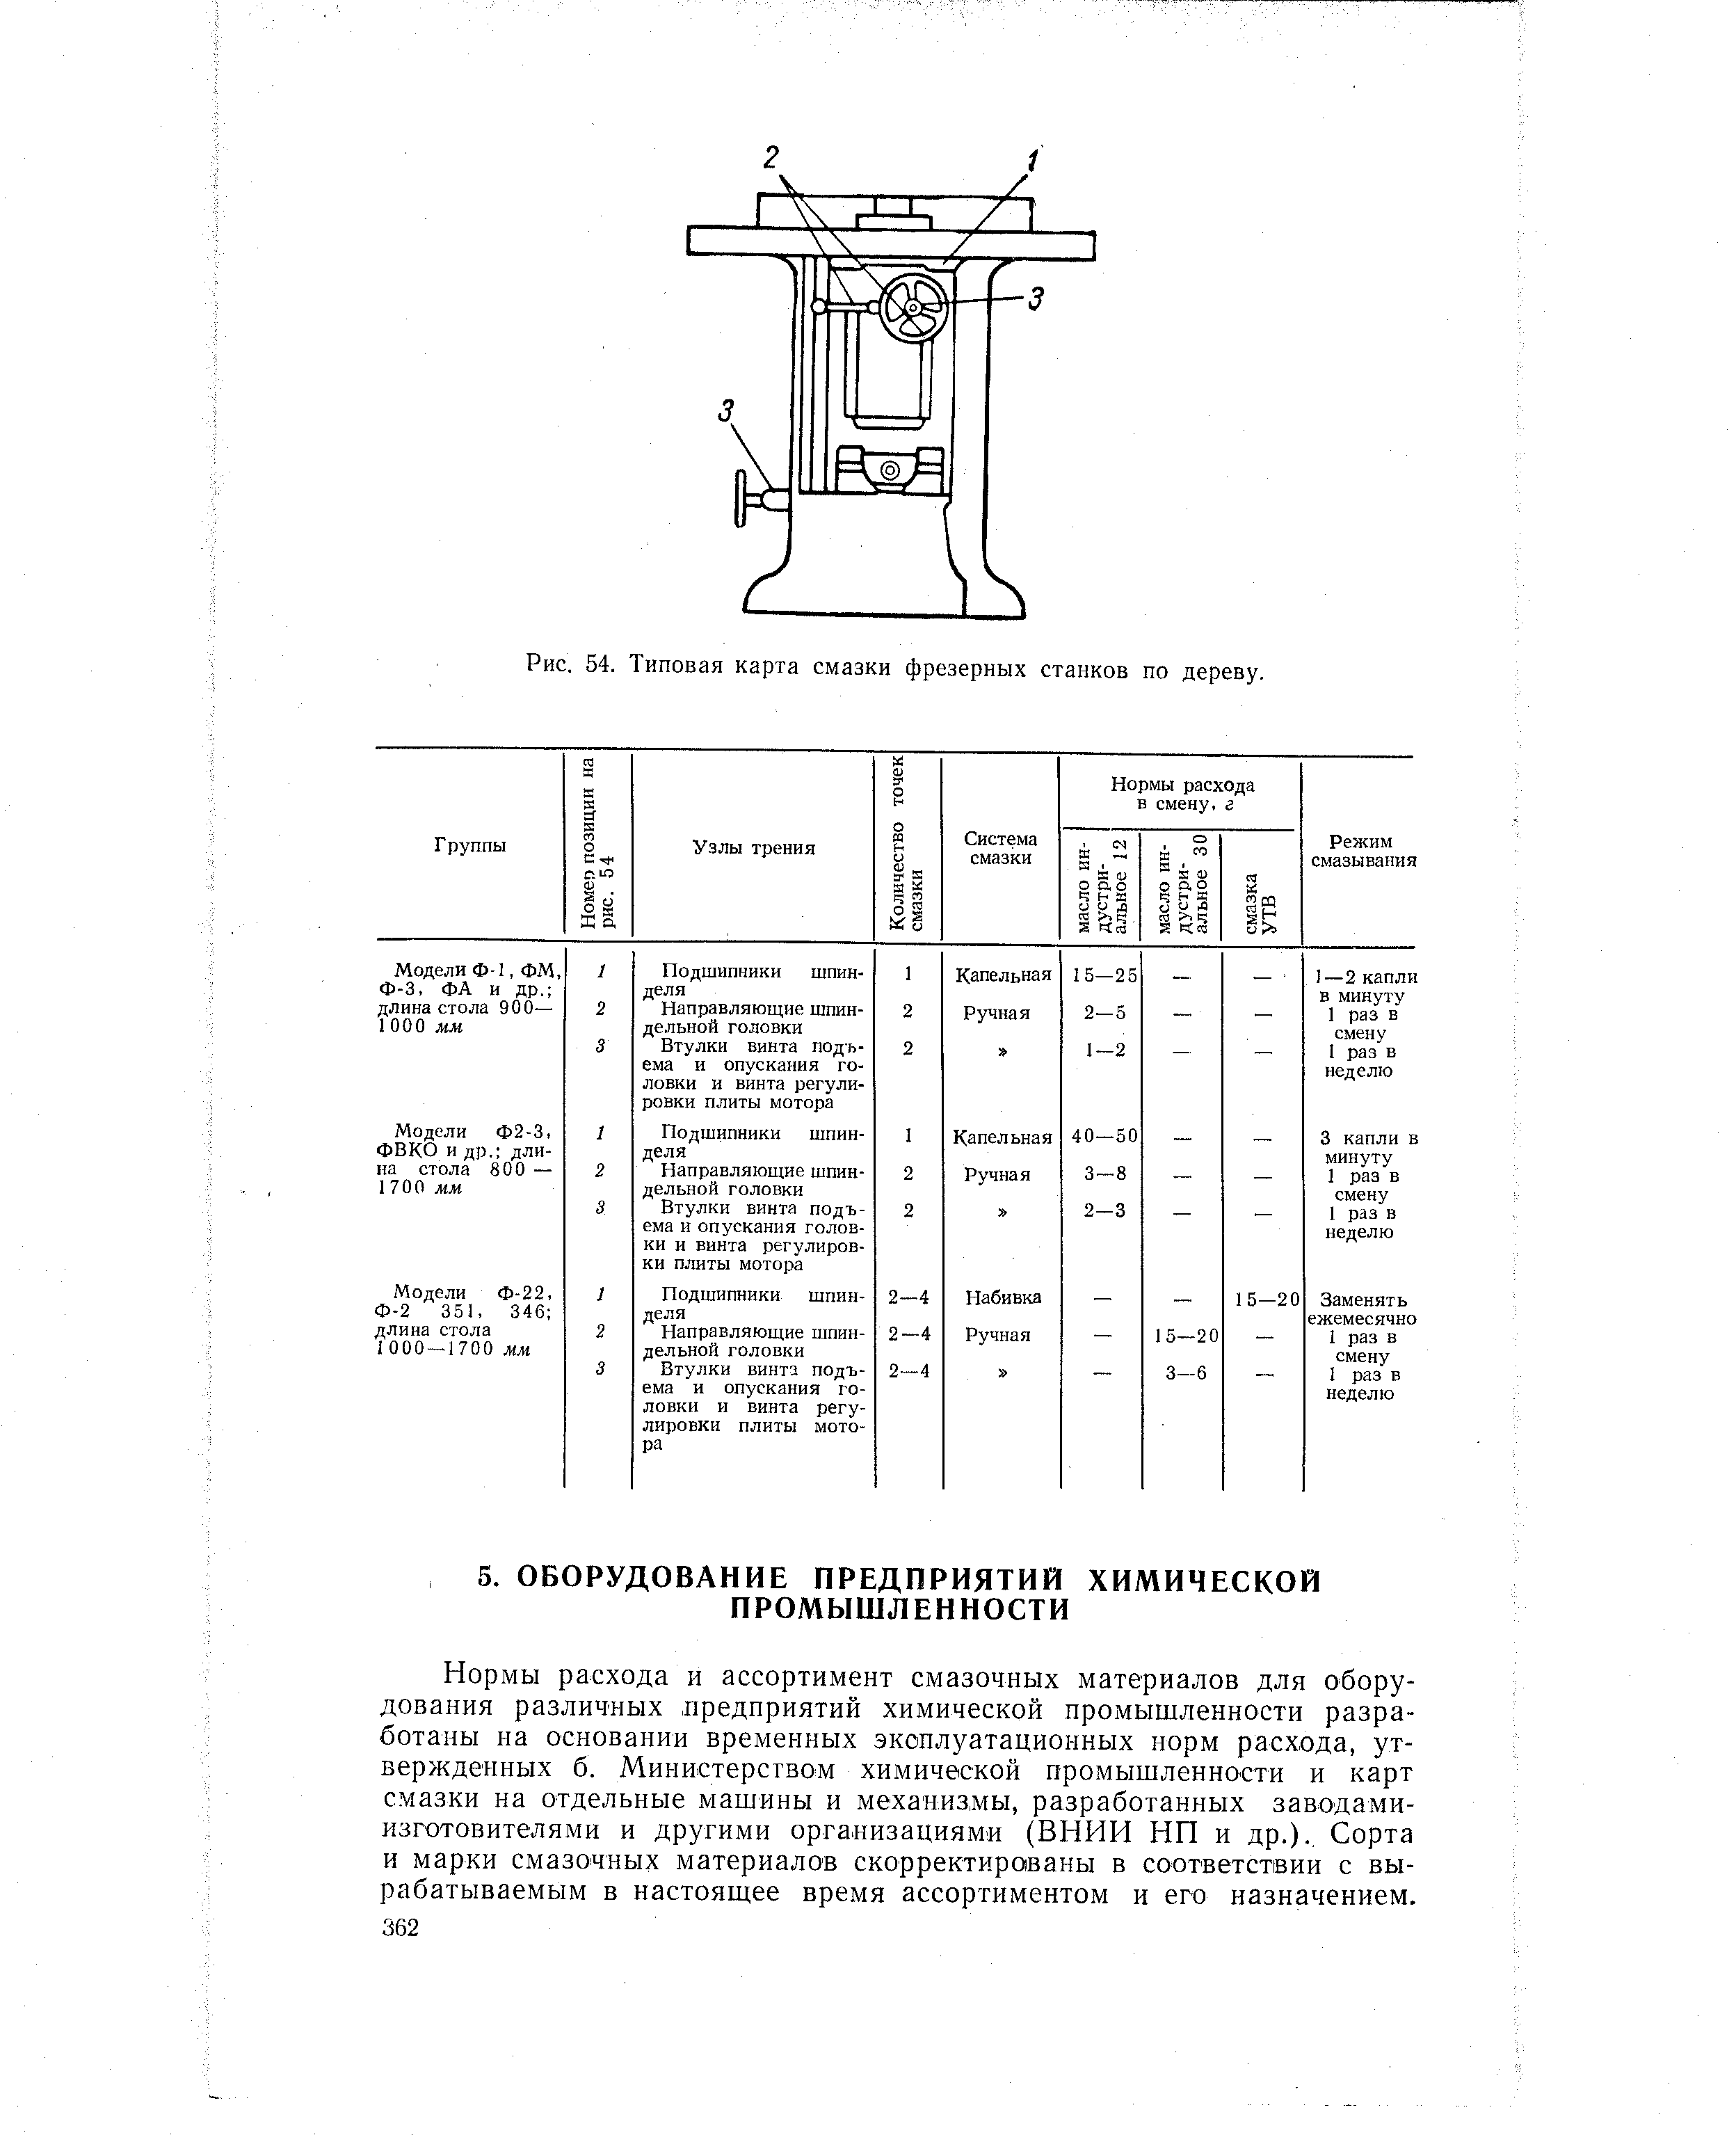 Рис. 54. Типовая карта смазки фрезерных станков по дереву.
